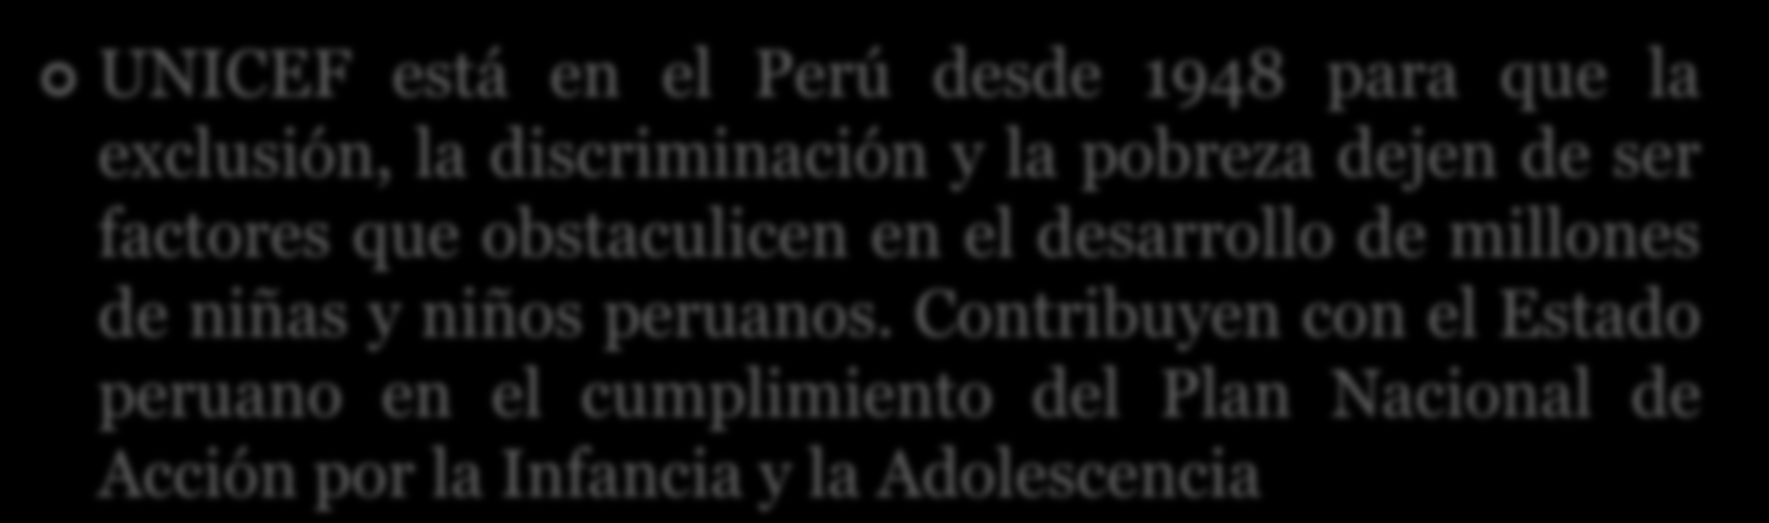 desarrollo de millones de niñas y niños peruanos.